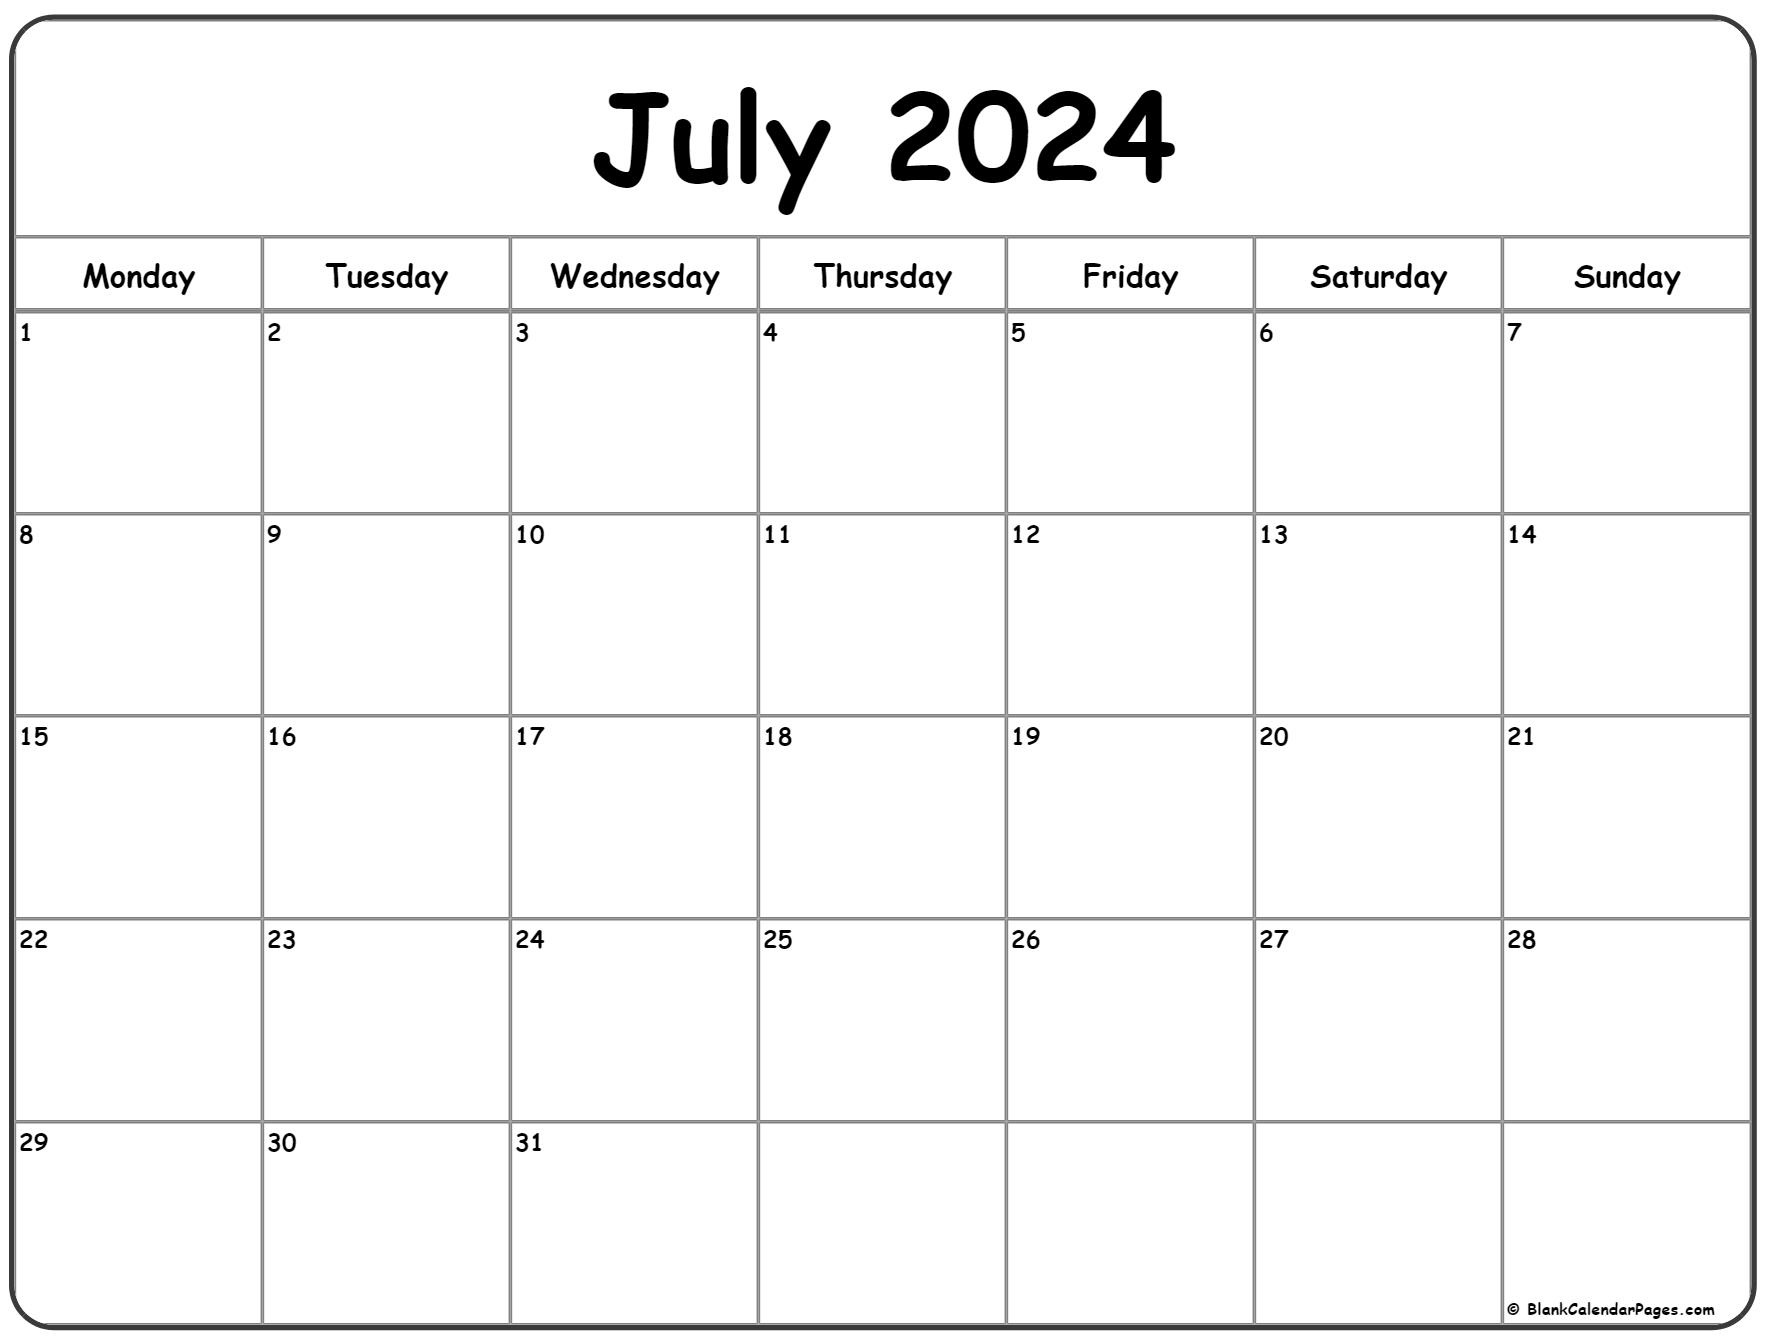 July 2024 Monday Calendar | Monday To Sunday inside July 2024 Calendar Monday Start